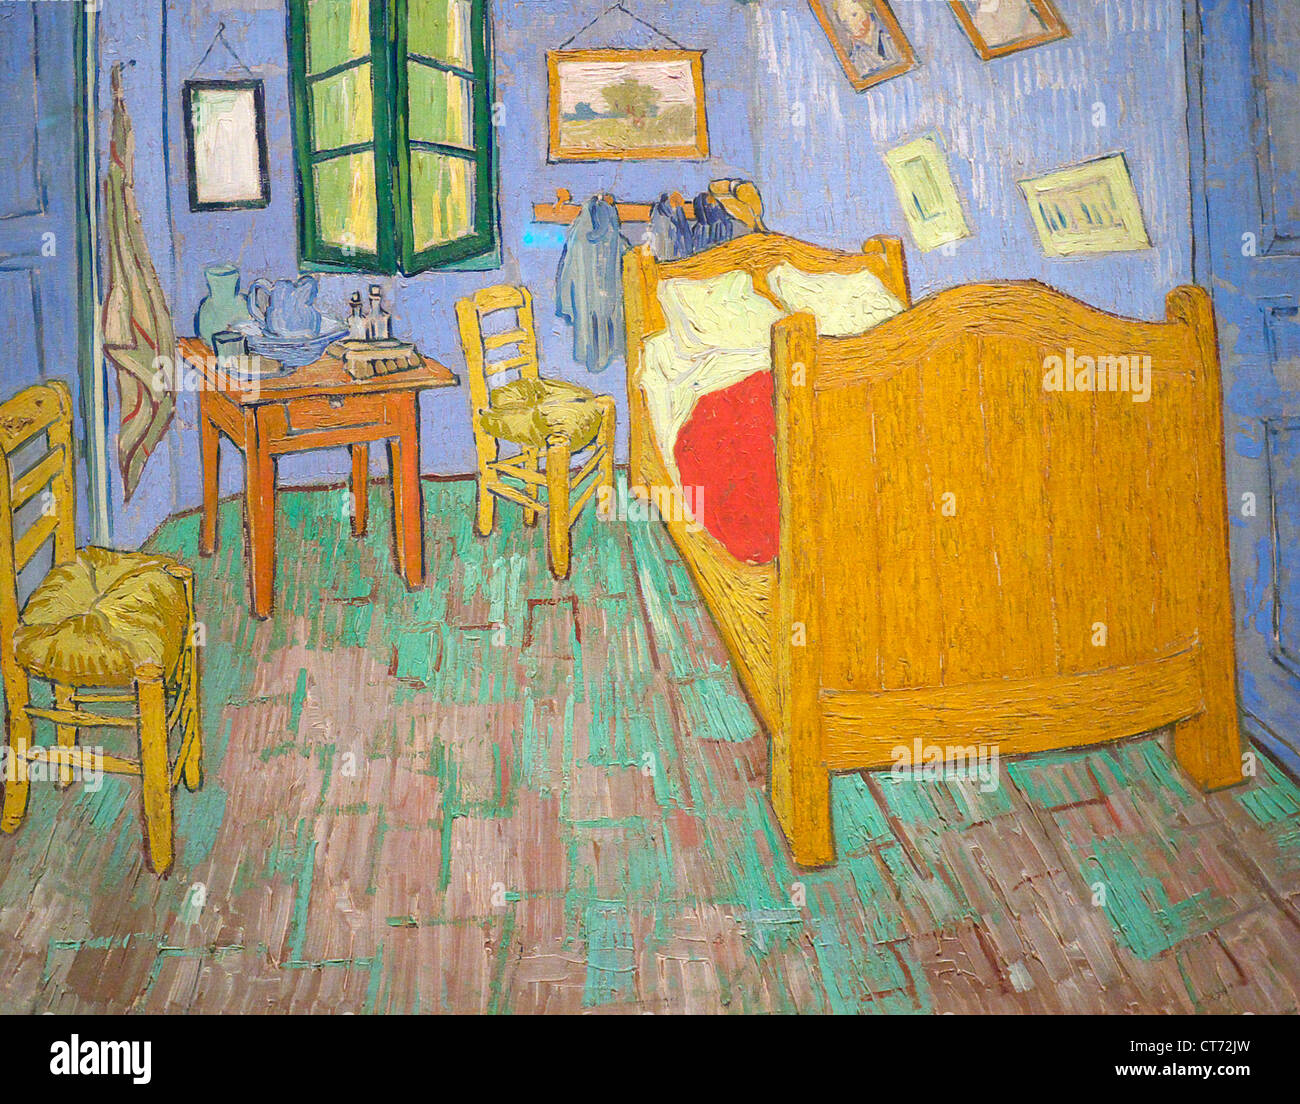 Bedroom in Arles - Vincent van Gogh painting, 1888 Stock Photo